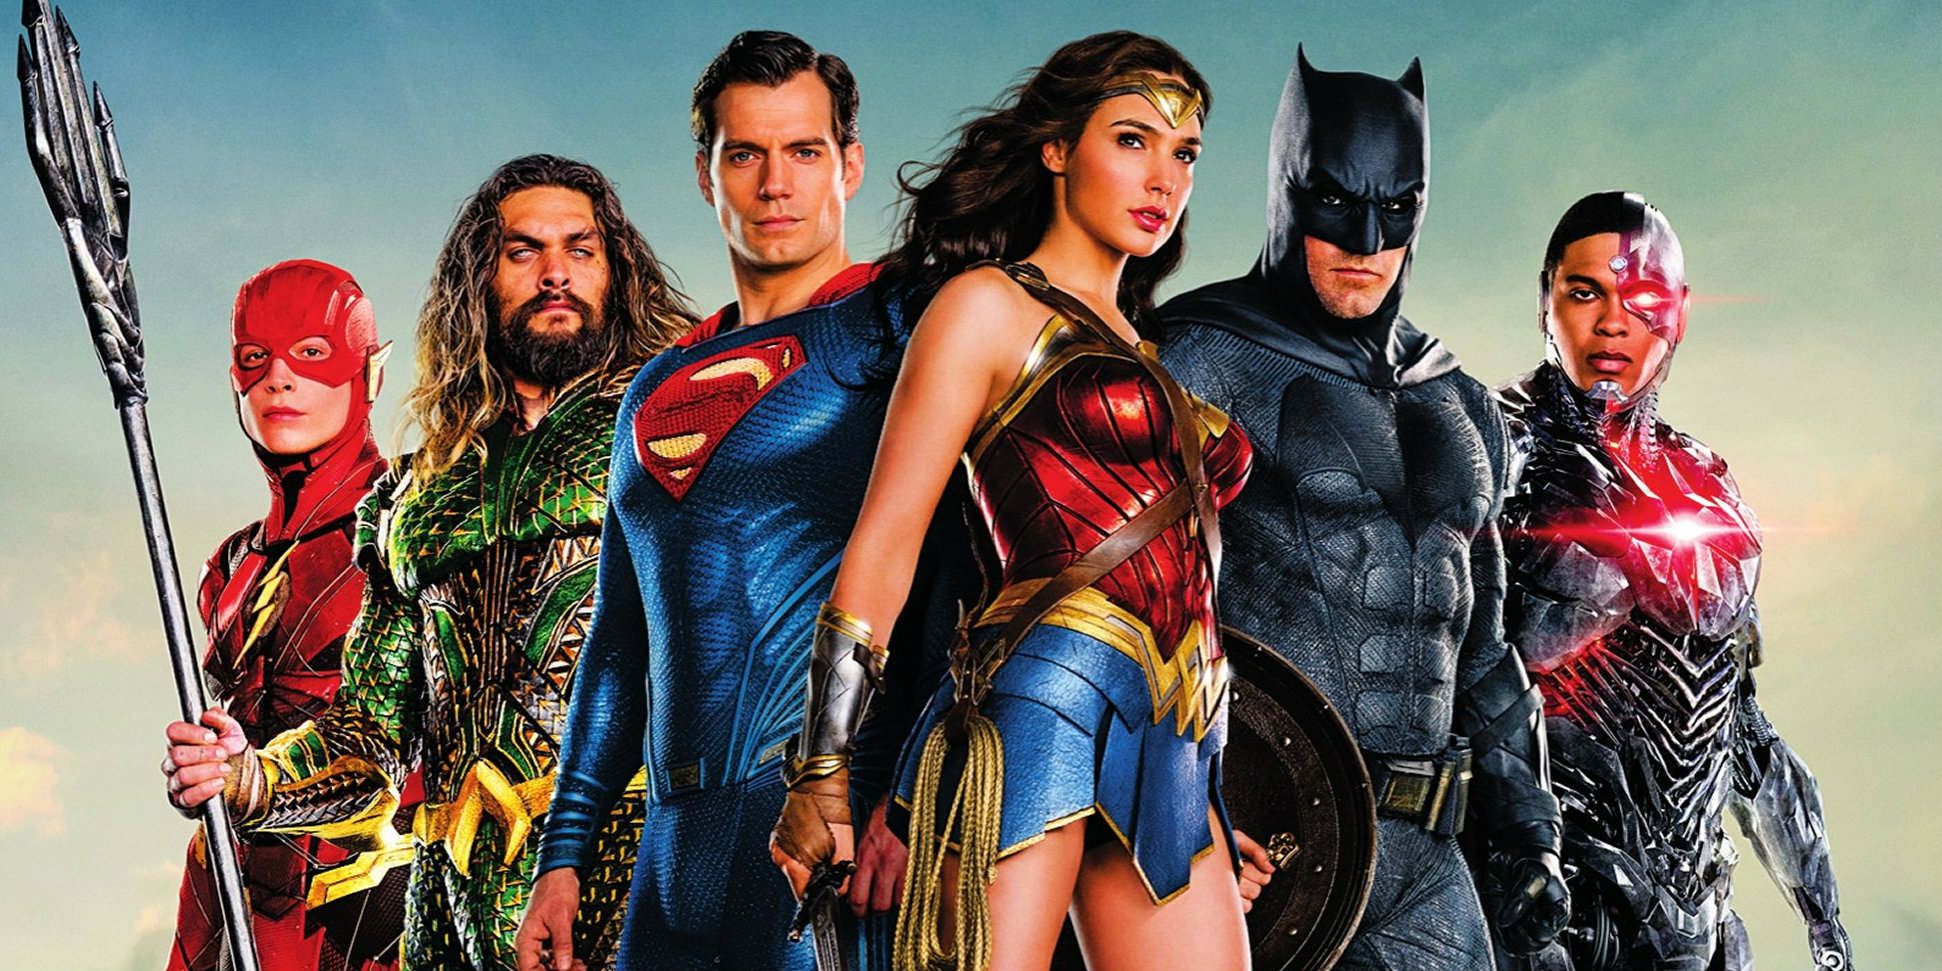 DC откладывают фильмы про Флэша и Супермена ради женских персонажей